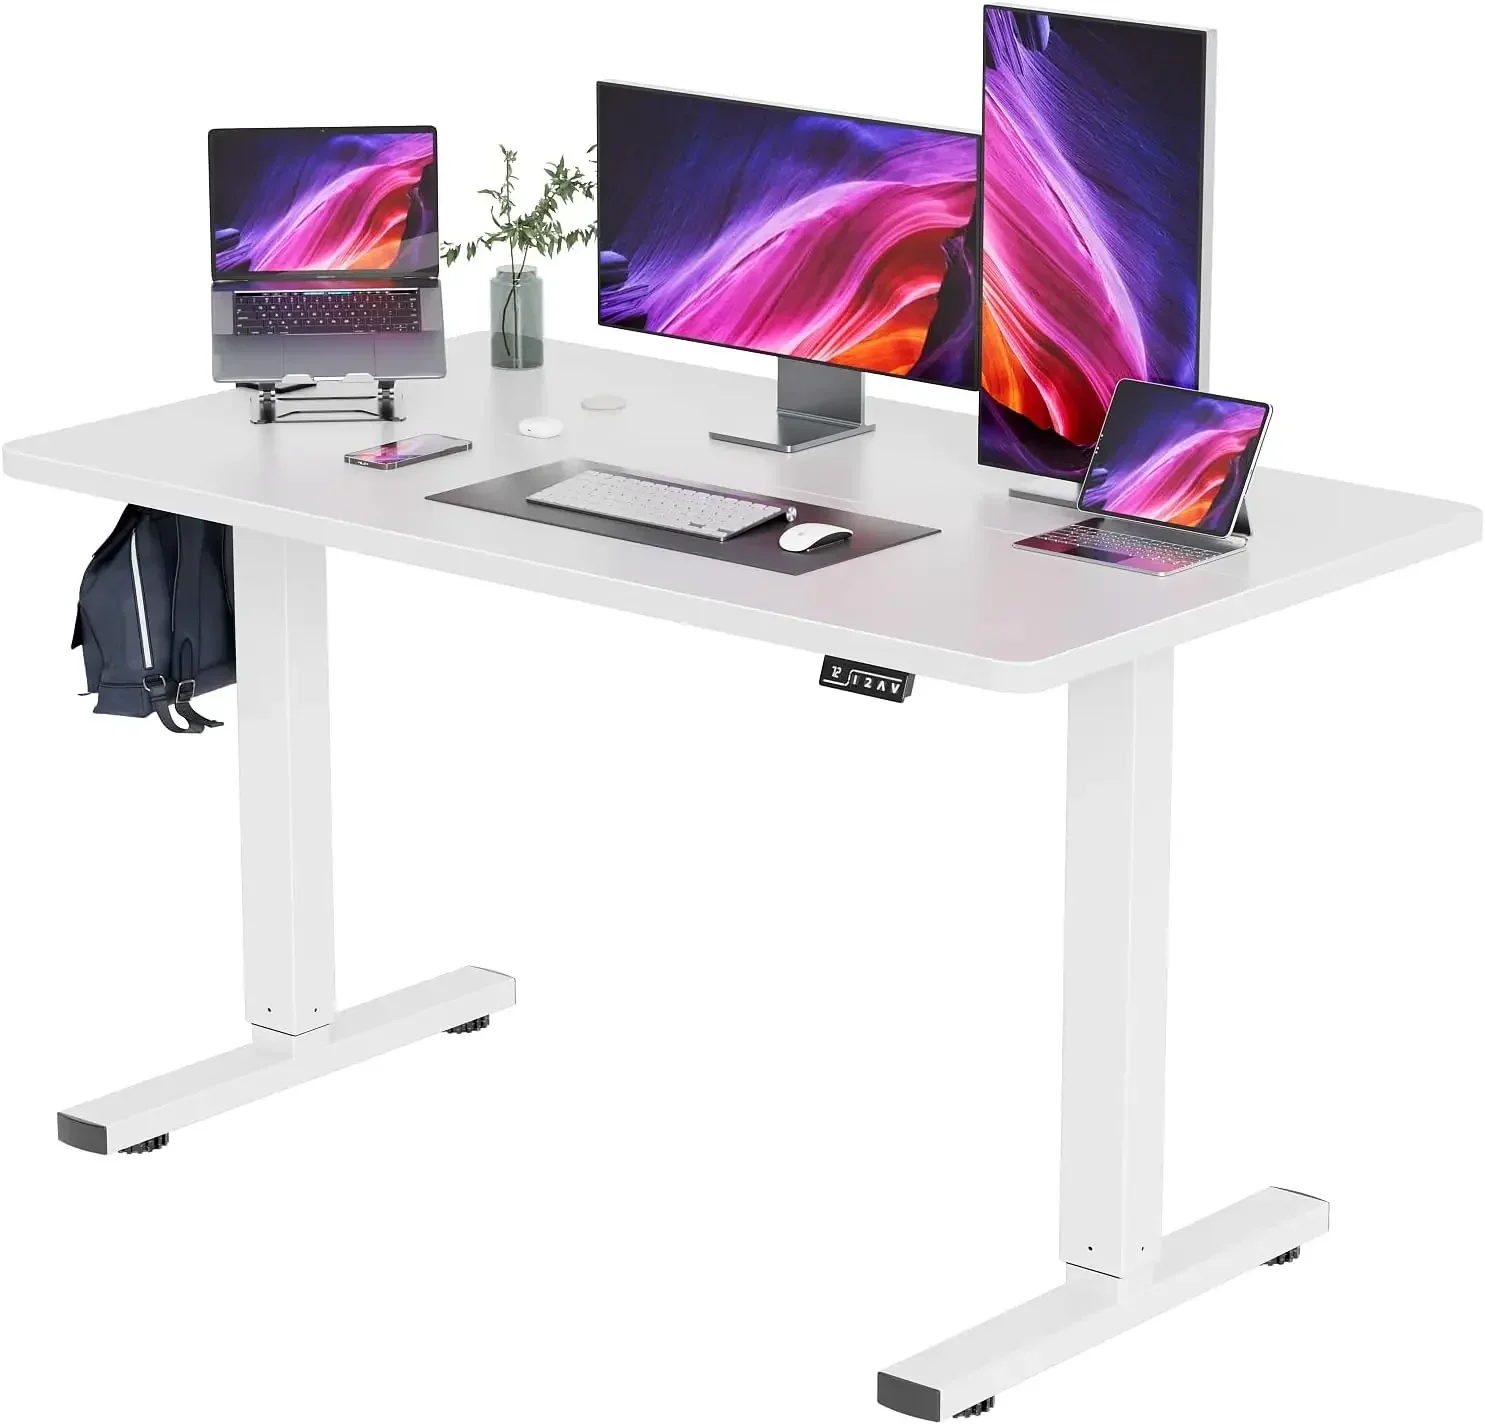 

Регулируемый по высоте электрический стоячий стол 55-дюймовый компьютерный стол, рабочая станция для дома и офиса, 55 дюймов, белый нож/белый верх